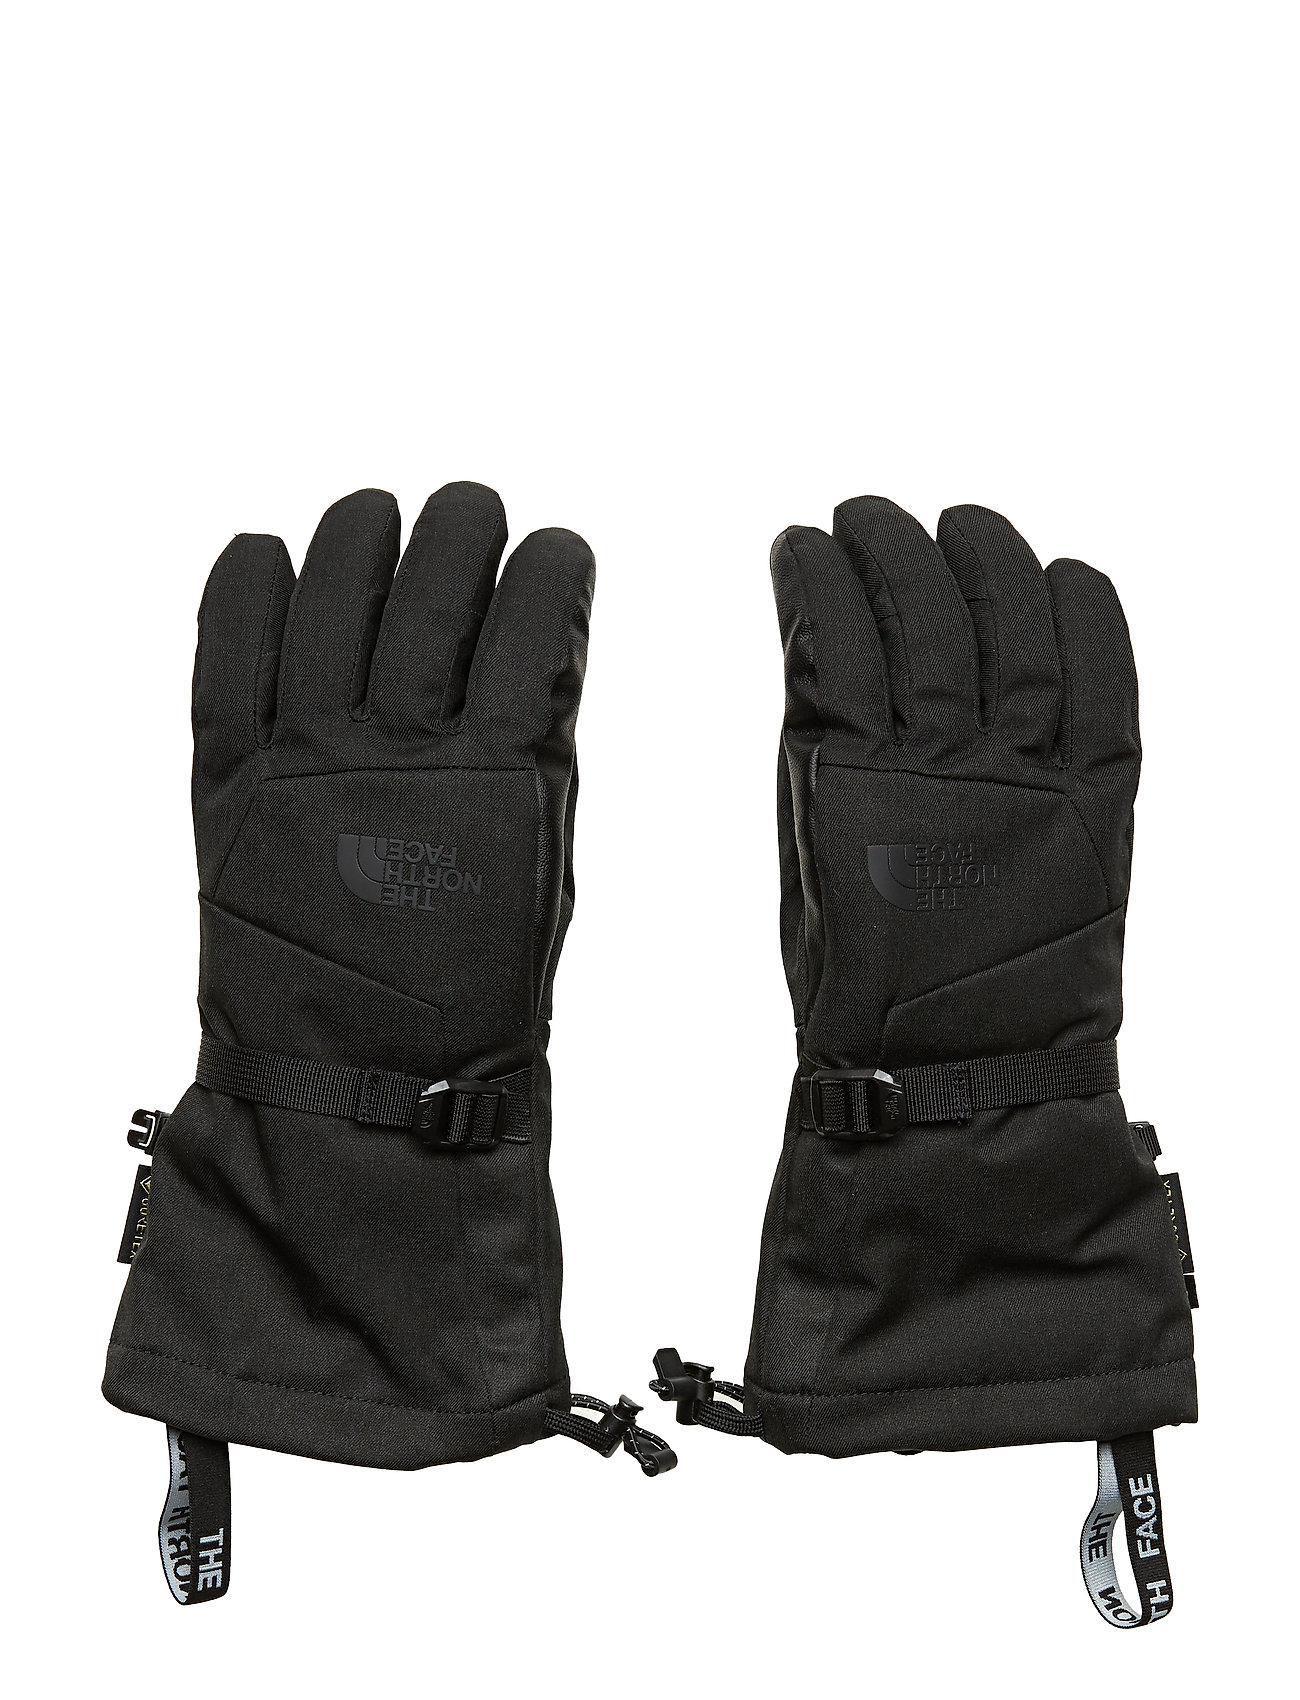 Zwarte dames handschoenen The North Face Montana GTX -  nfoa3m3bks7